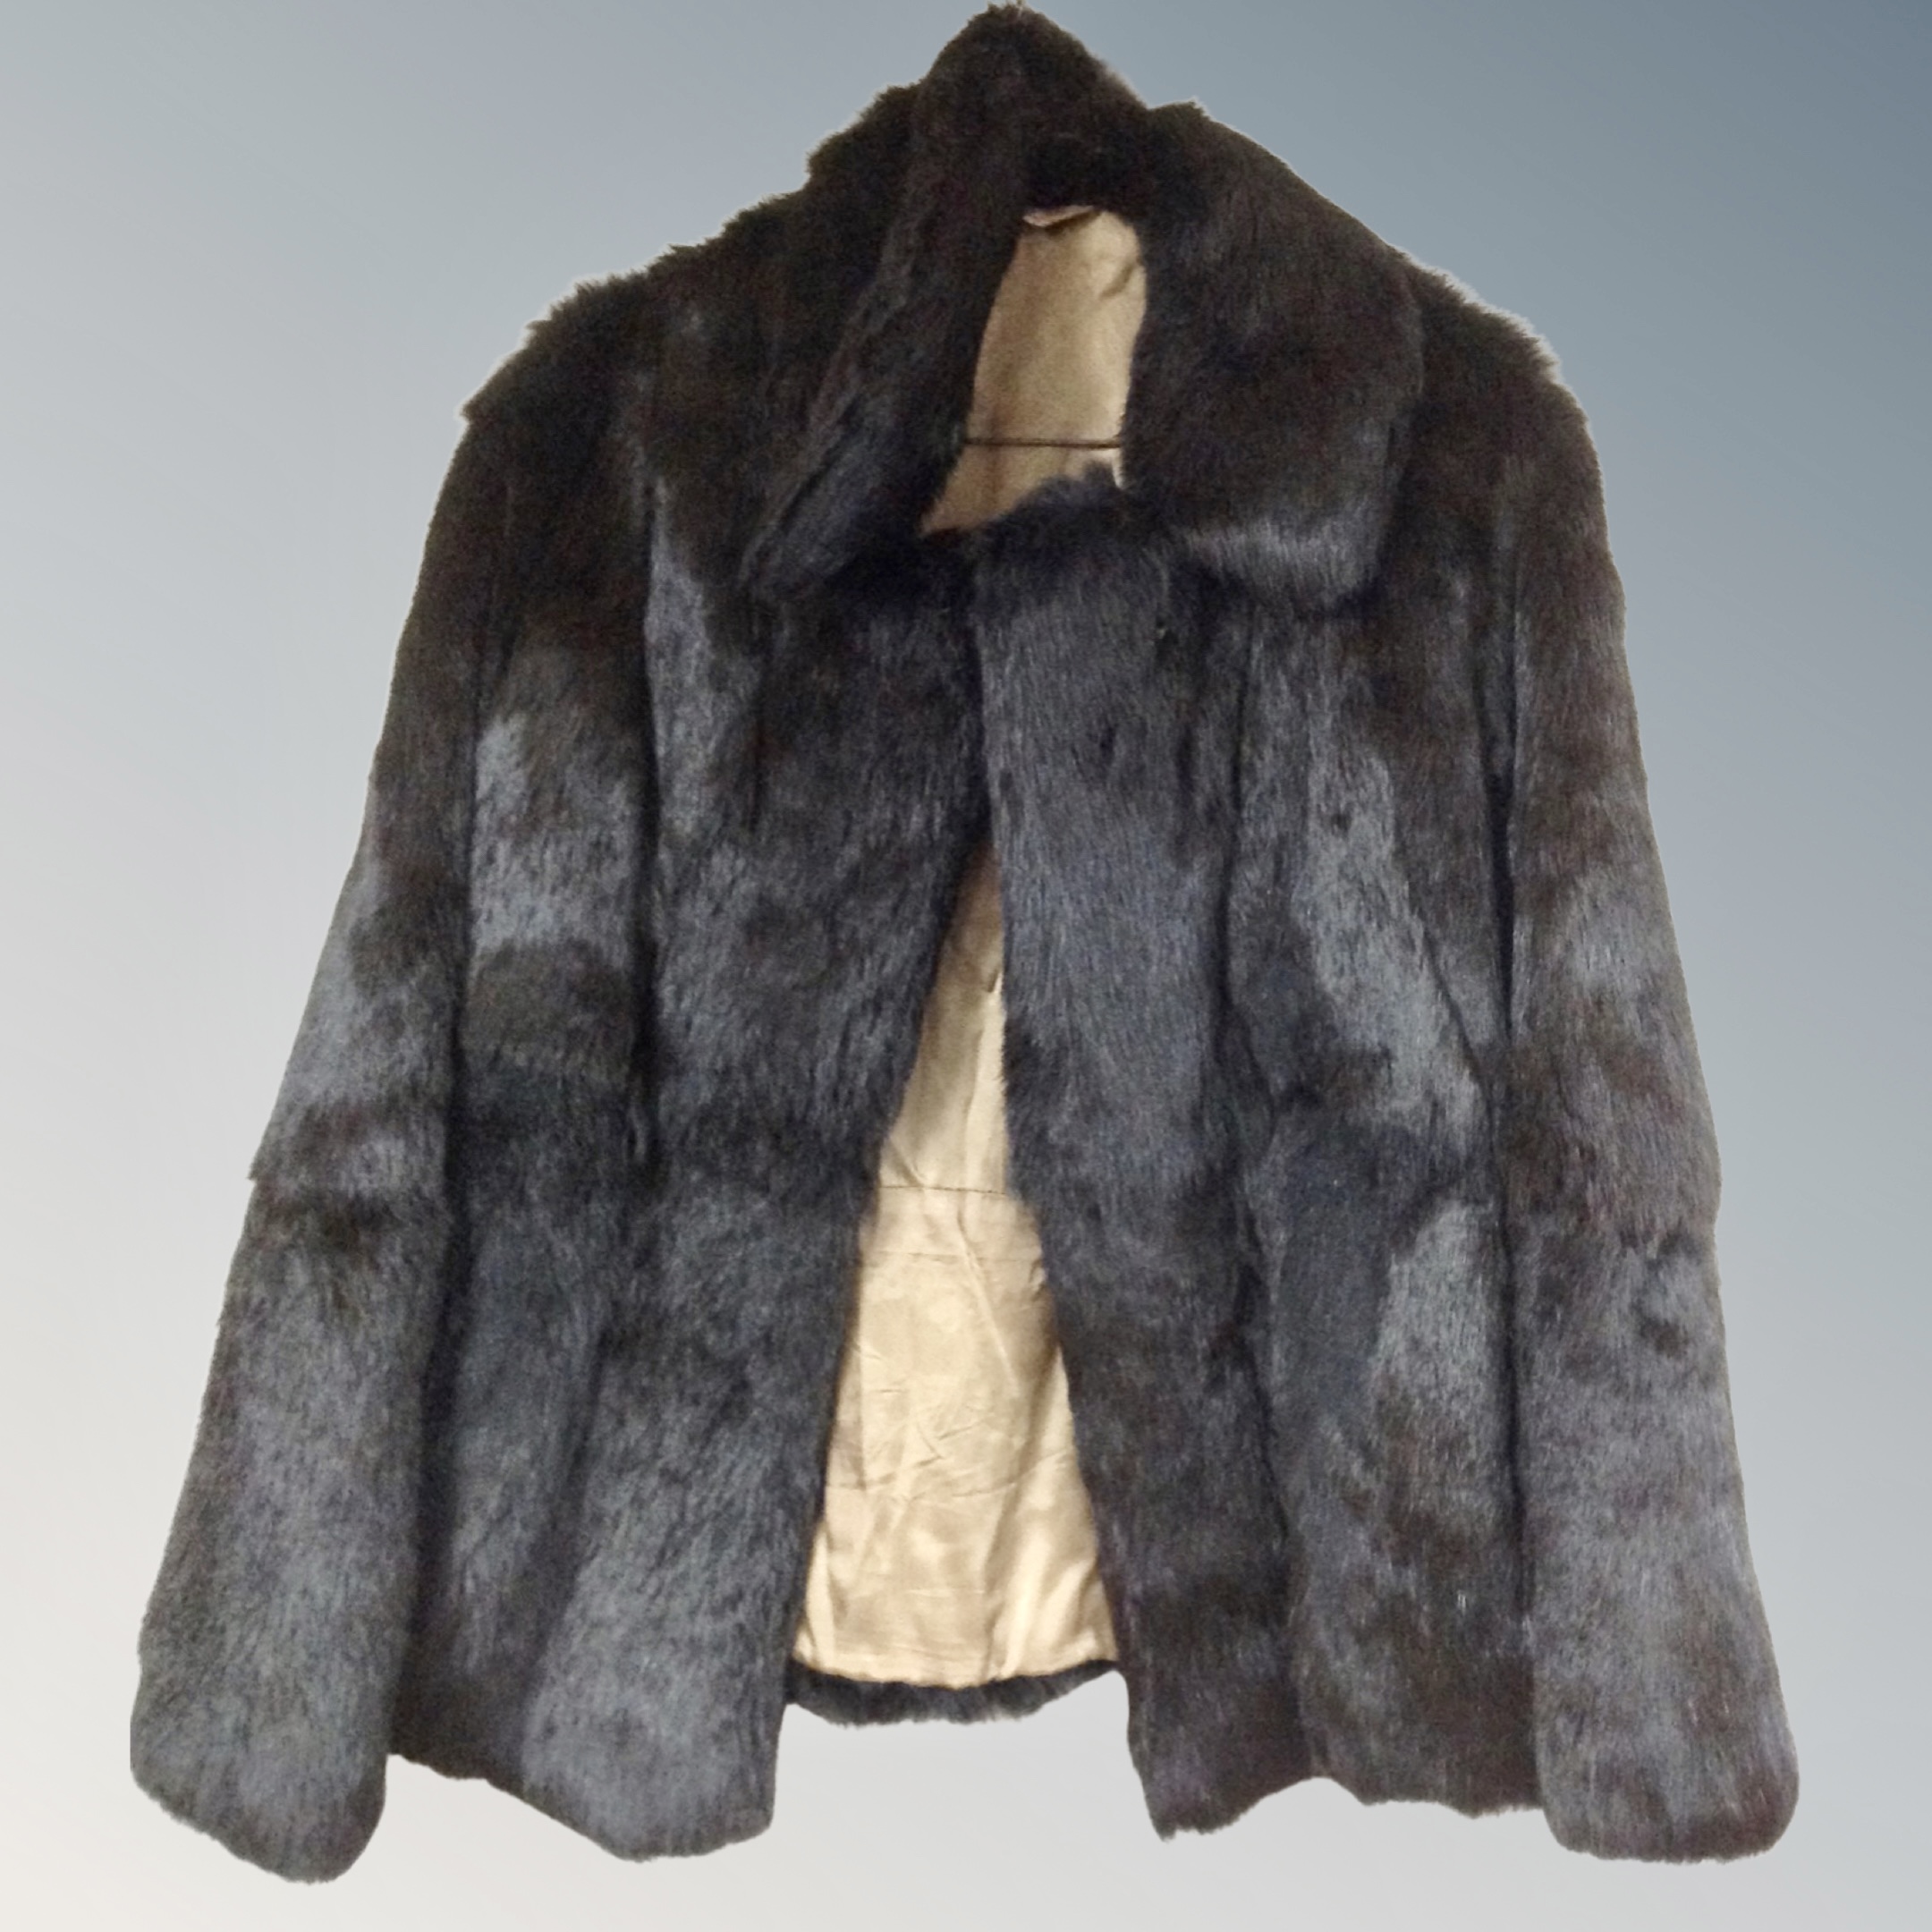 A vintage dark brown fur coat